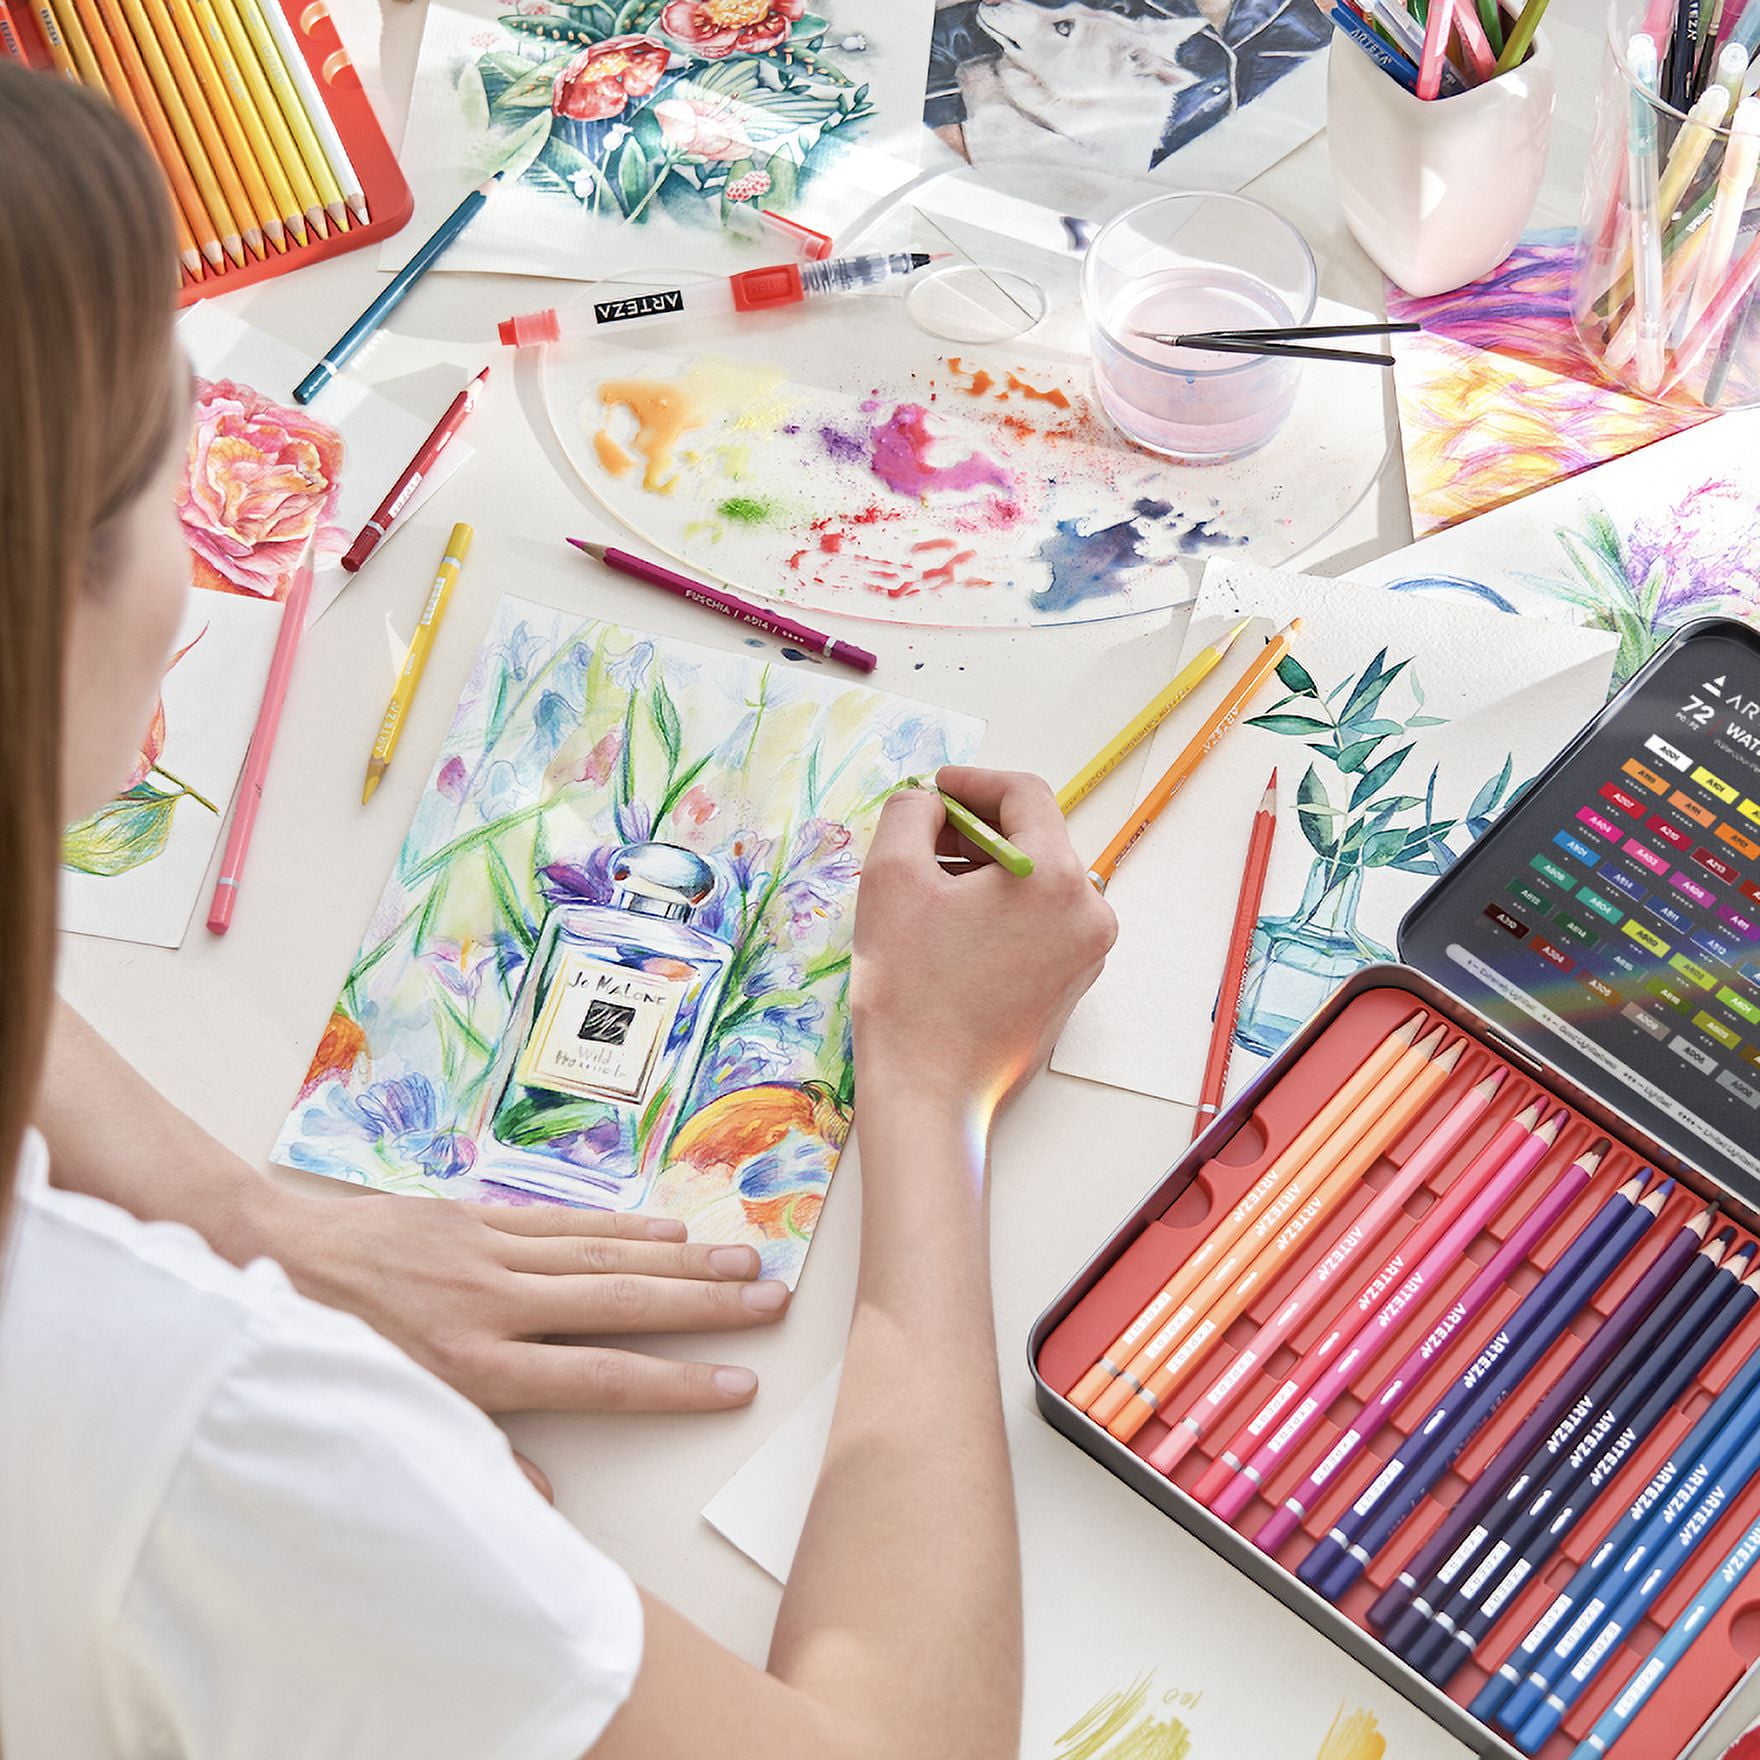 Watercolor Pencils 72 Pieces Set – Pagos Art